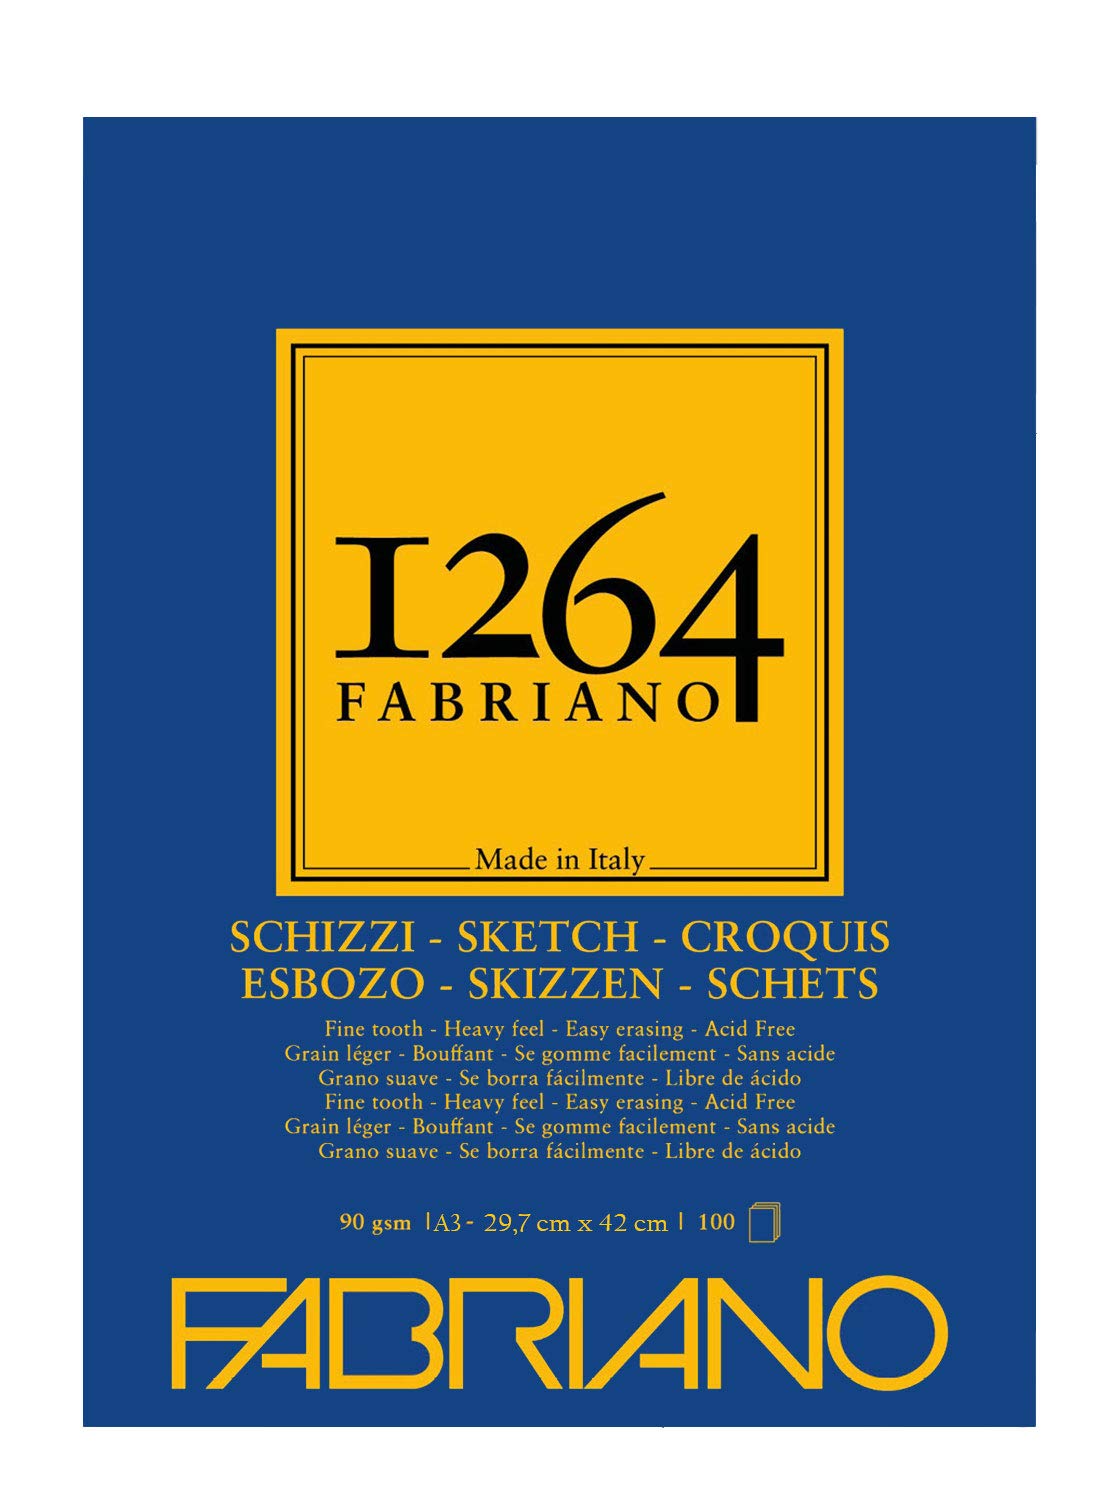 Blocco Fabriano 1264 schizzi A3 gr.90 fg.100 collato in testa